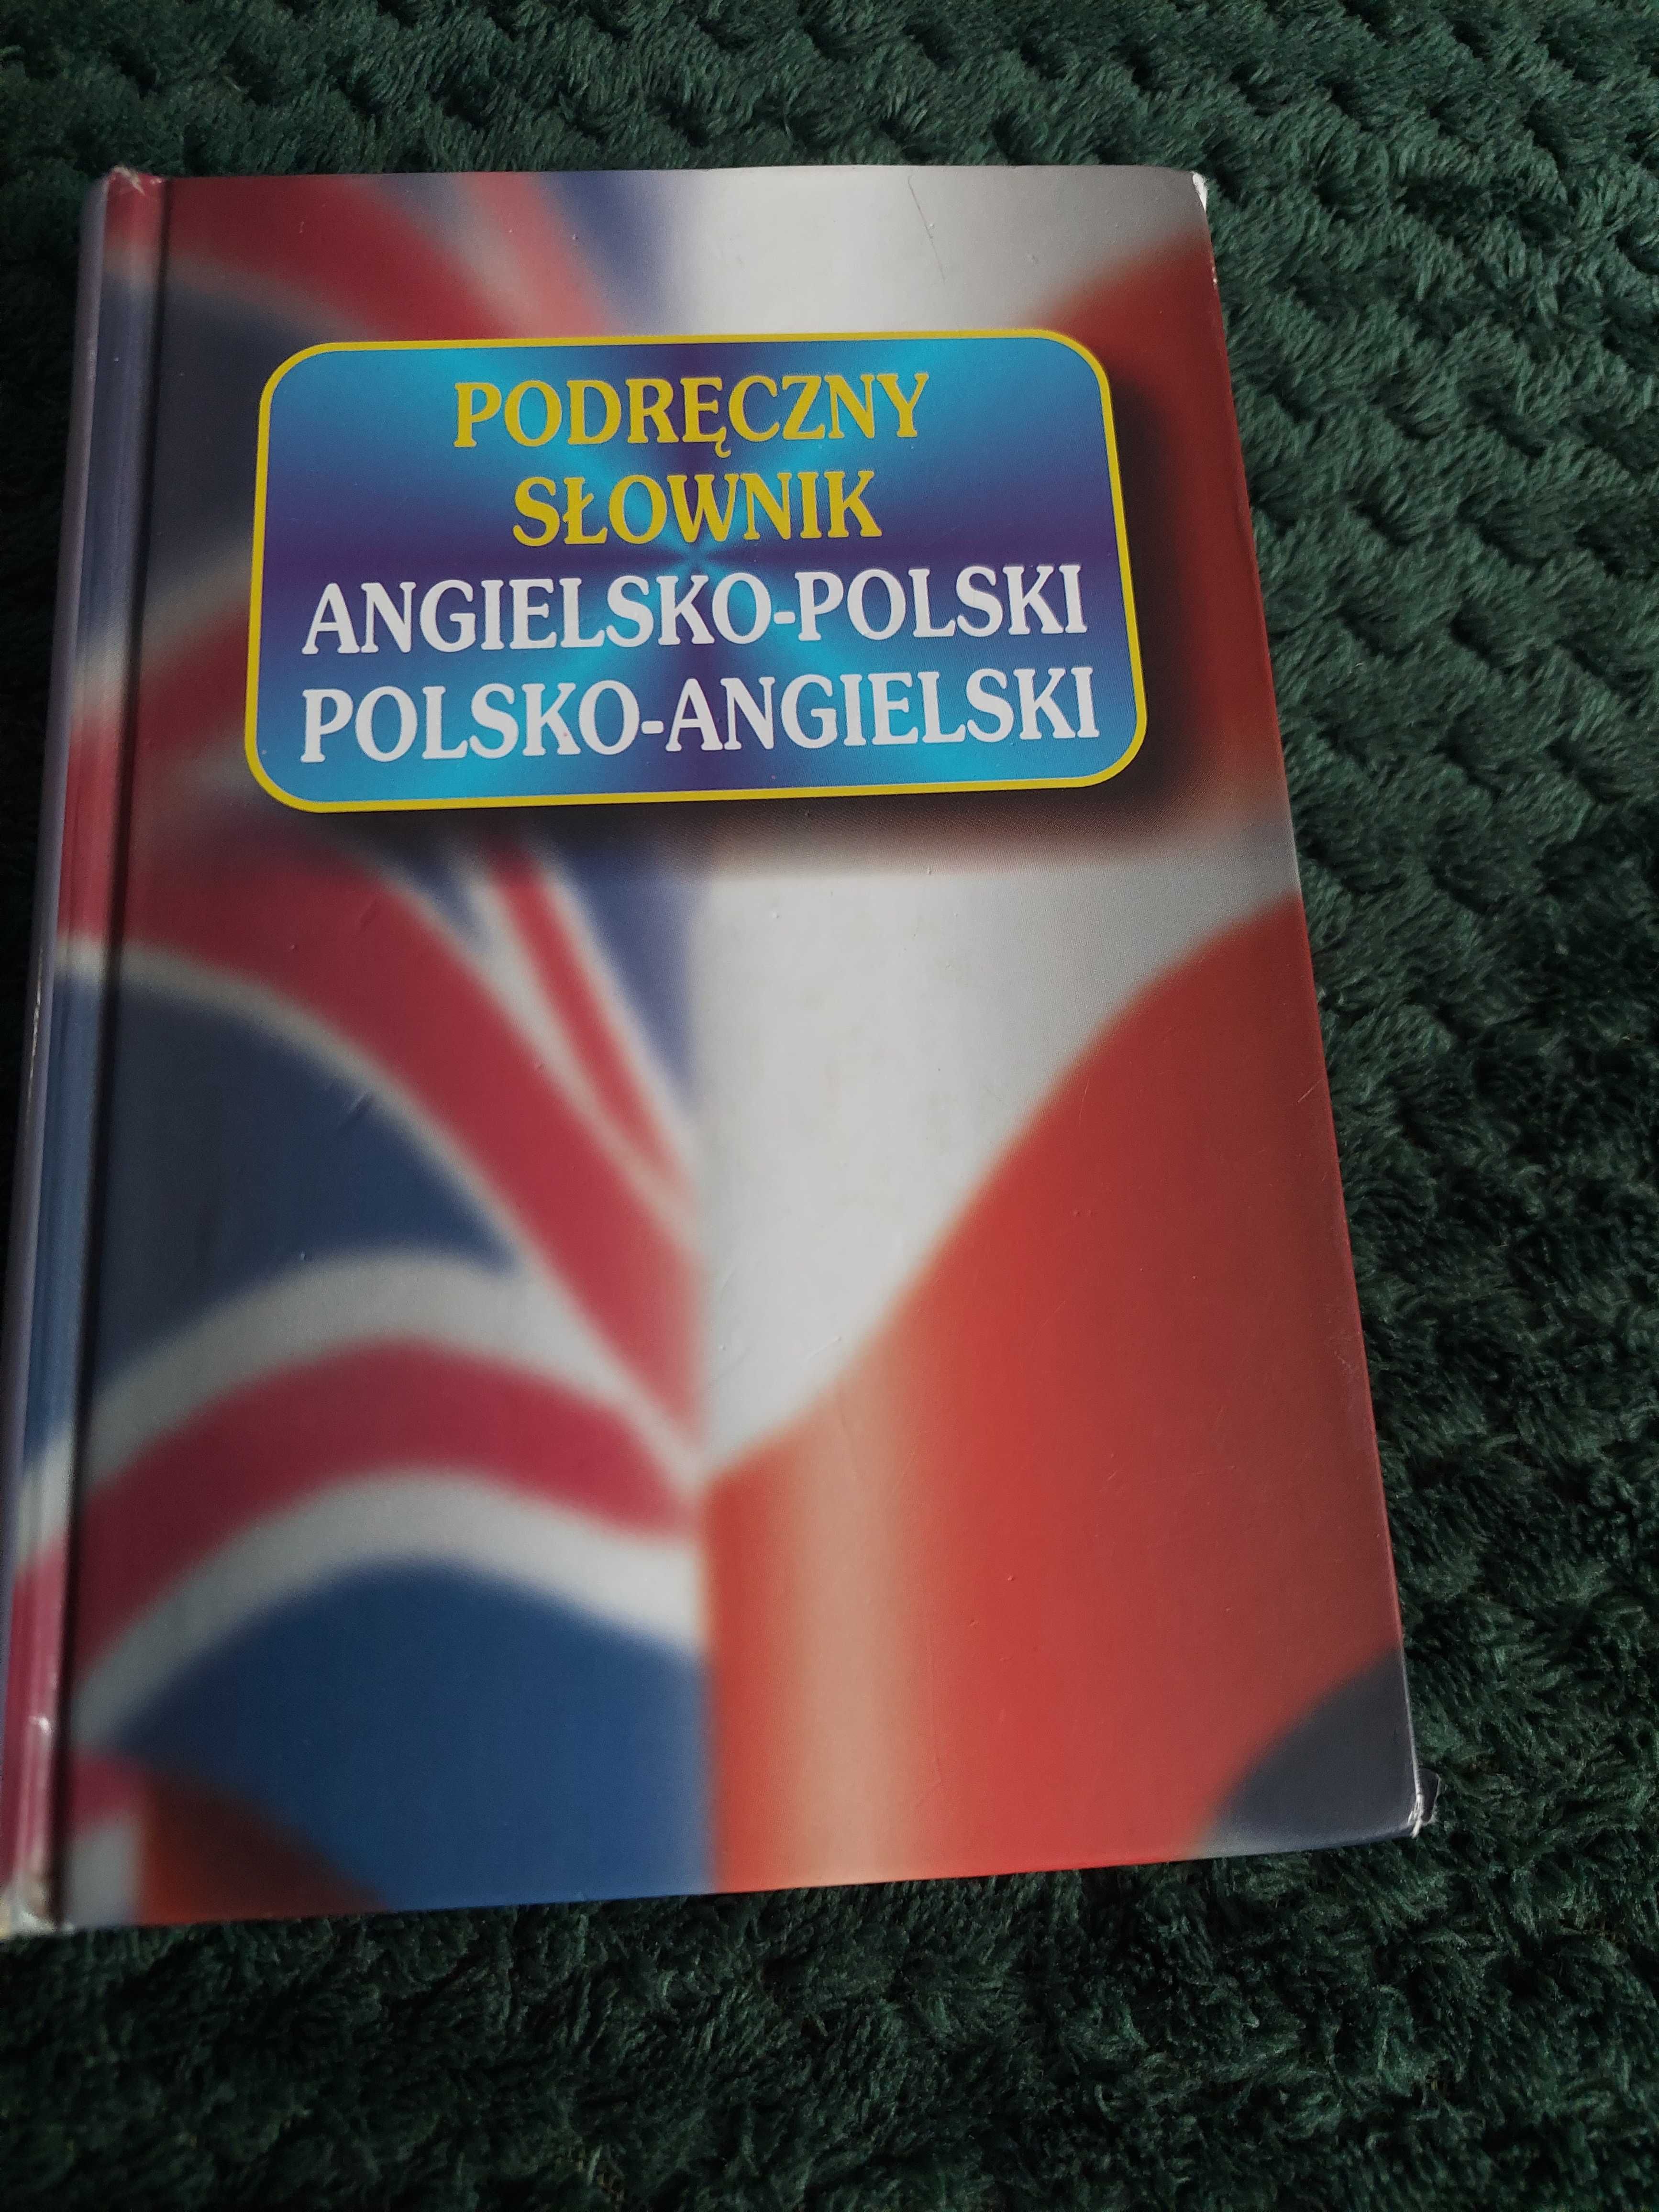 Podręczny słowni Angielsko - polski i Polsko - angielski